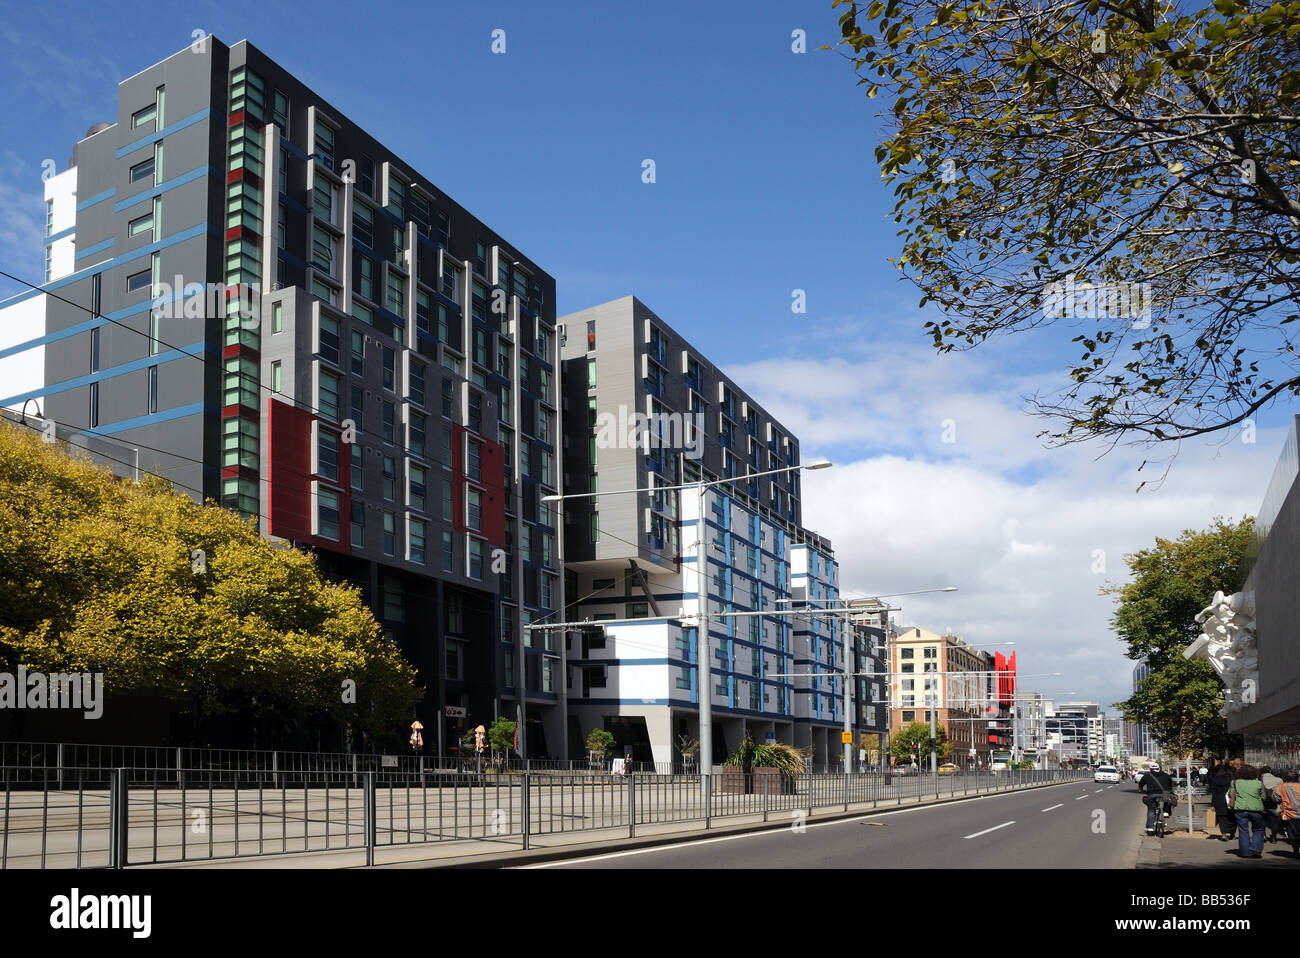 Les bâtiments modernes de grands immeubles de bureaux Appartements Appartements Swanston Street Melbourne, Australie Banque D'Images